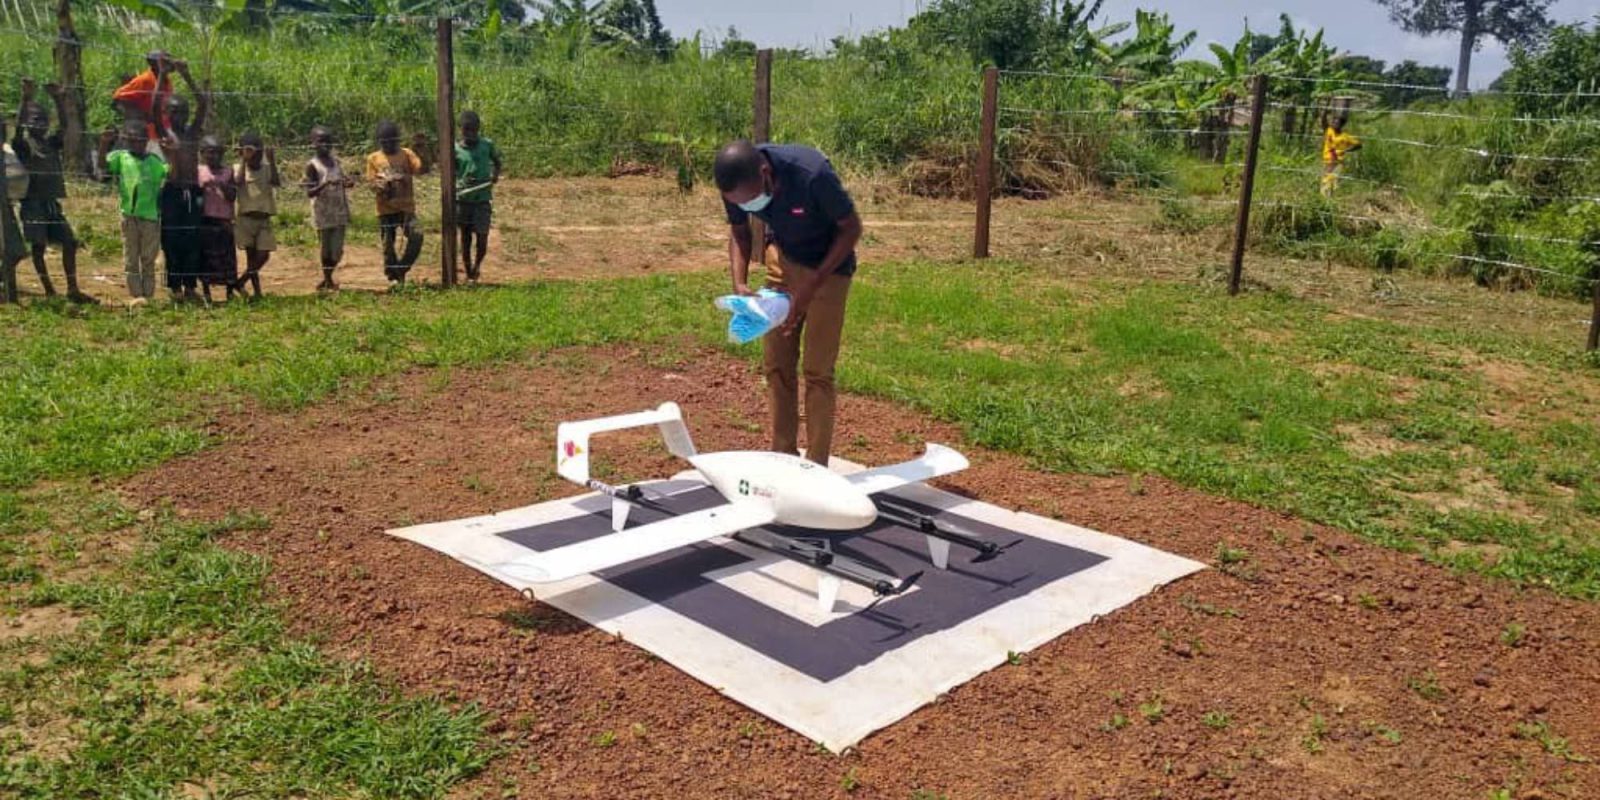 DR Congo's medical delivery drones